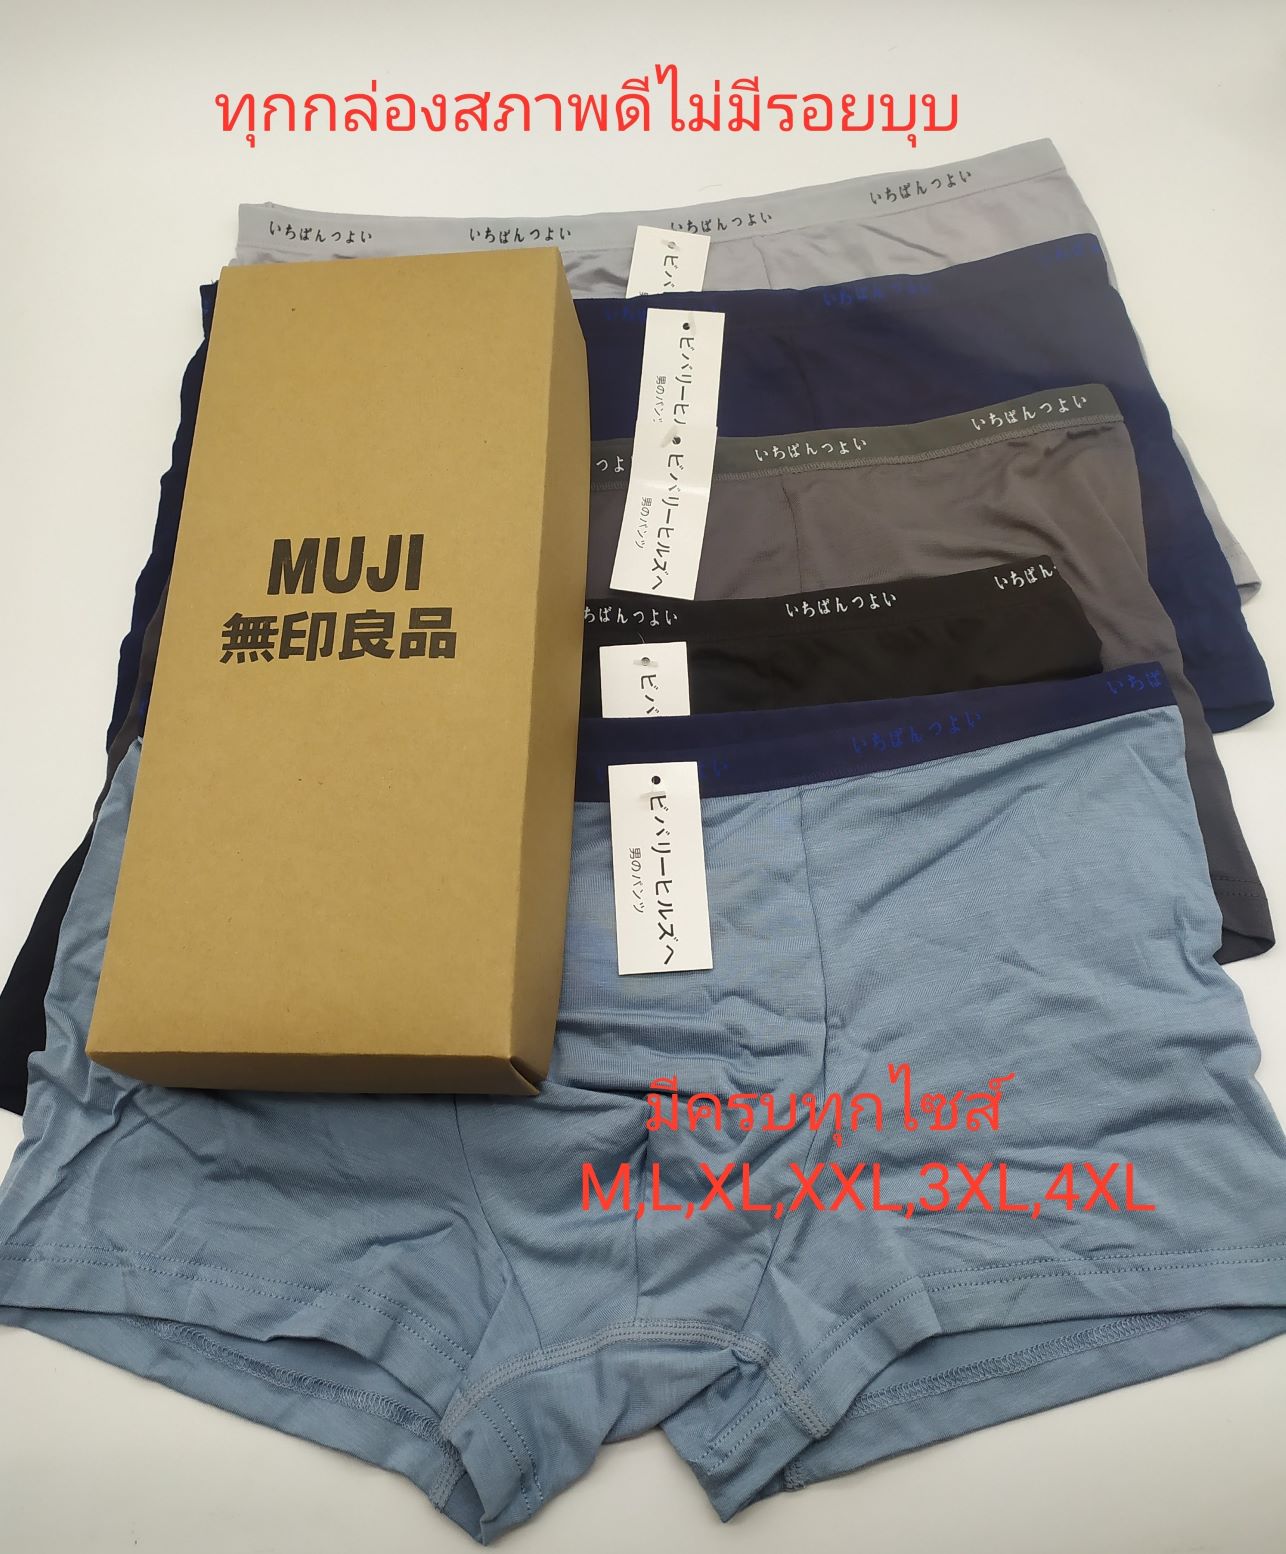 กางเกงในboxer ระดับPremiumสไตล์ mujiที่ขายดีที่สุดมาตรฐานญี่ปุ่น